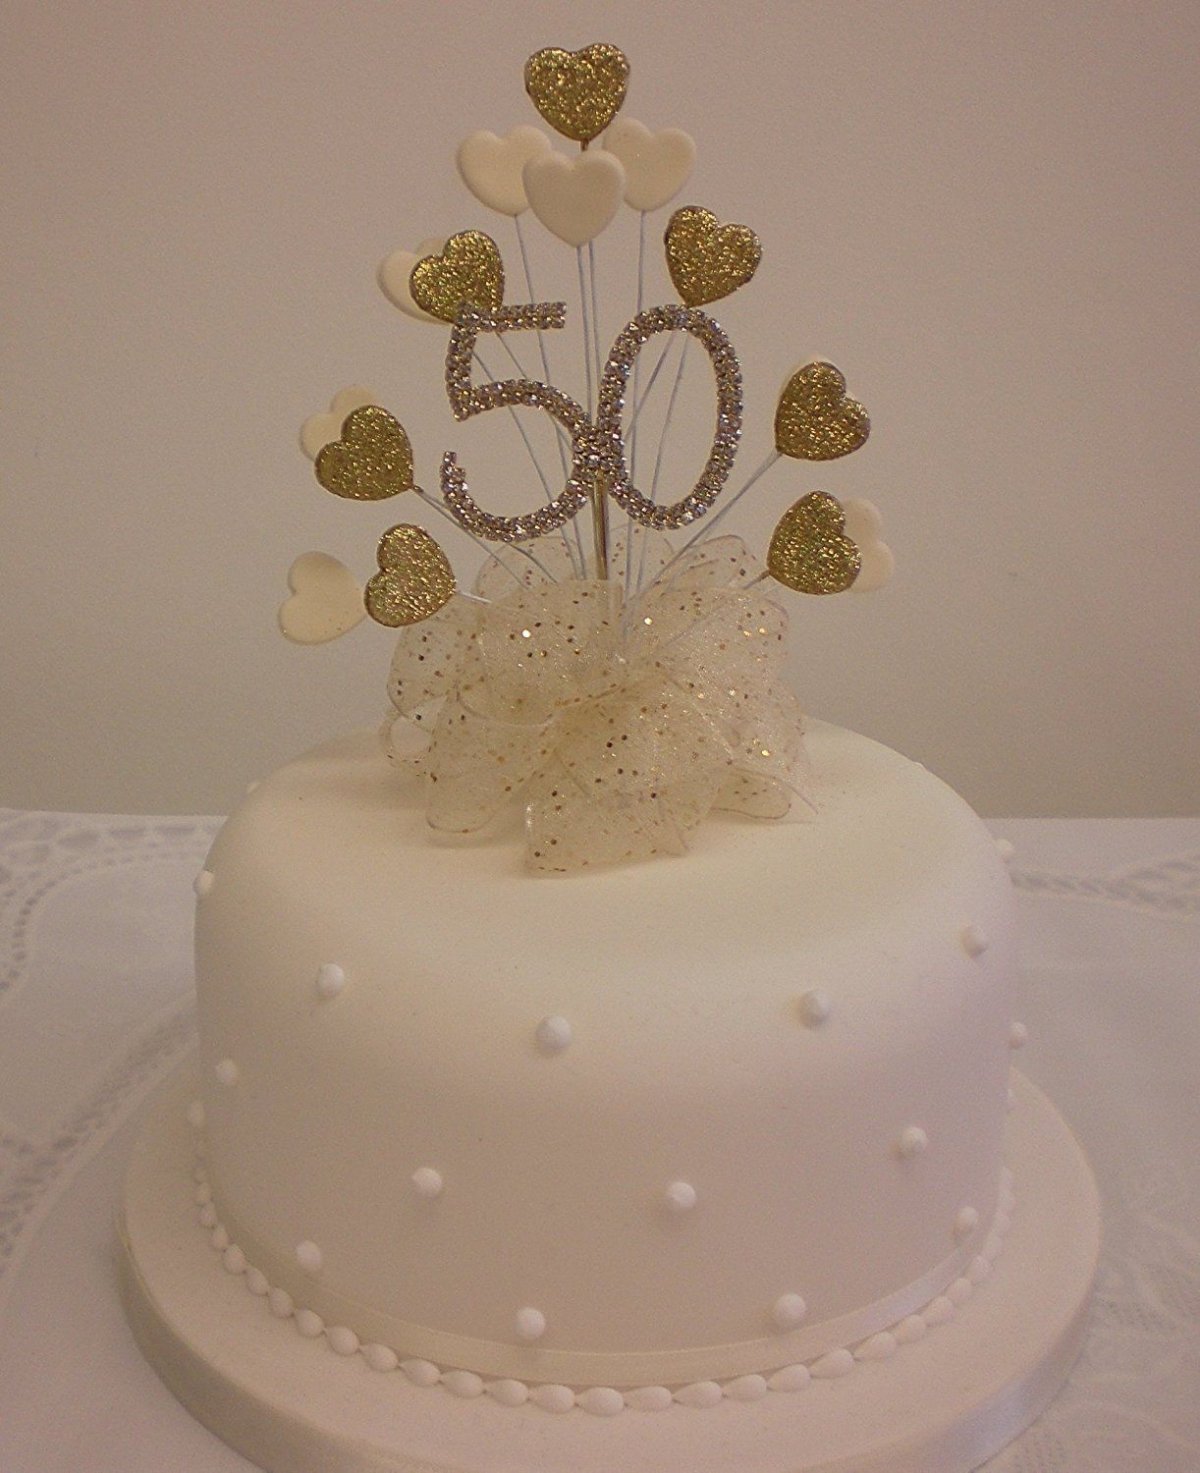 Торт на годовщину свадьбы 50 лет